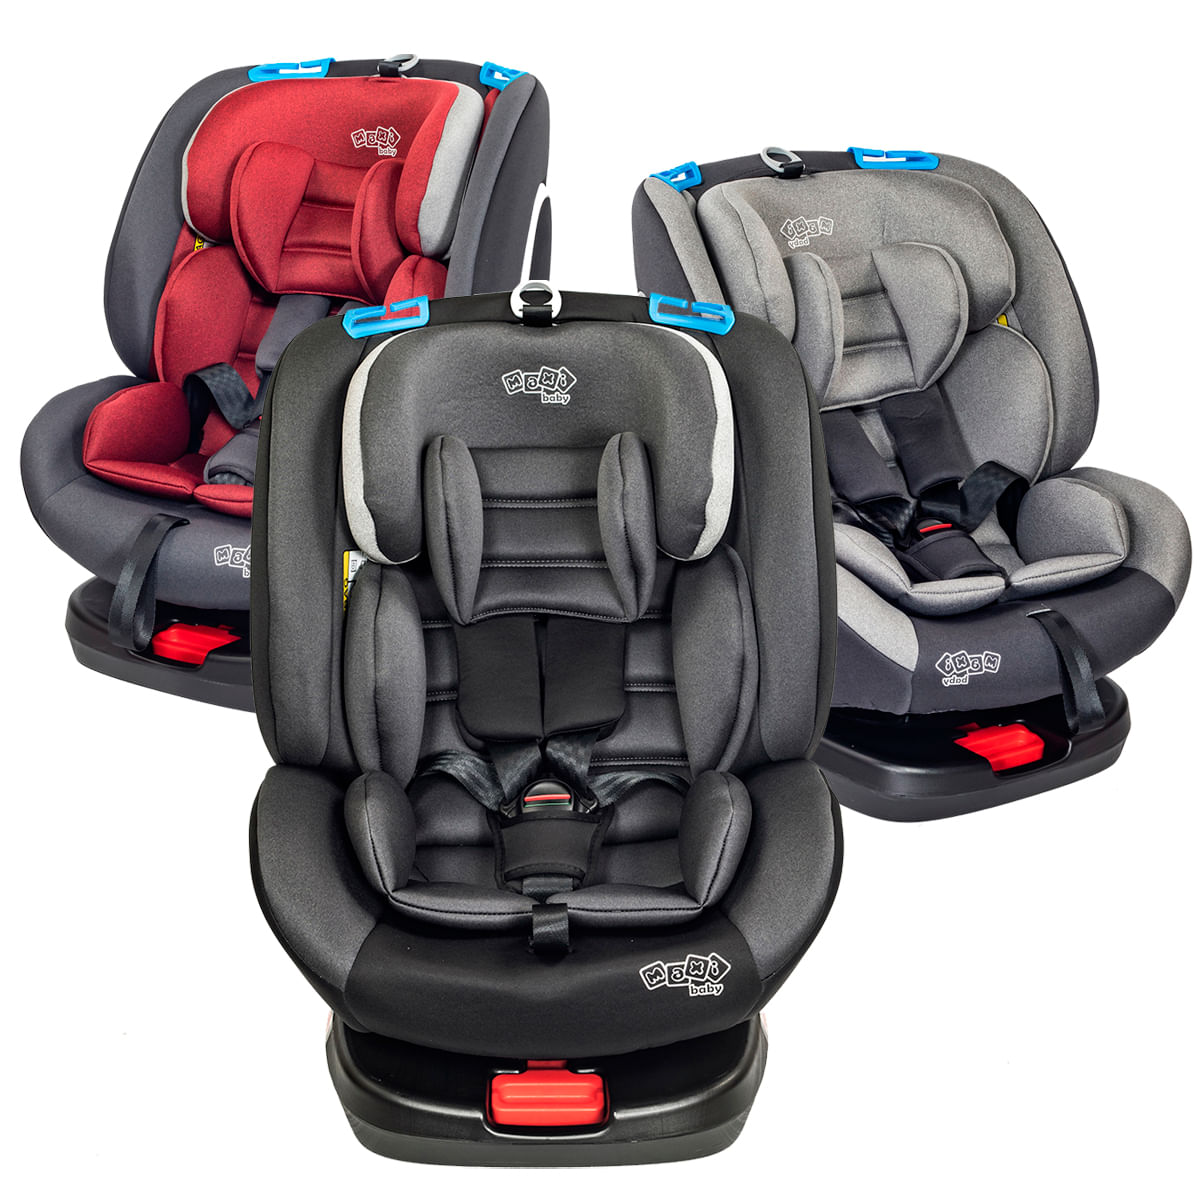 Encontre Cadeira de Carro Infantil na Loja Oficial Planeta do Bebê -  Planeta do Bebê